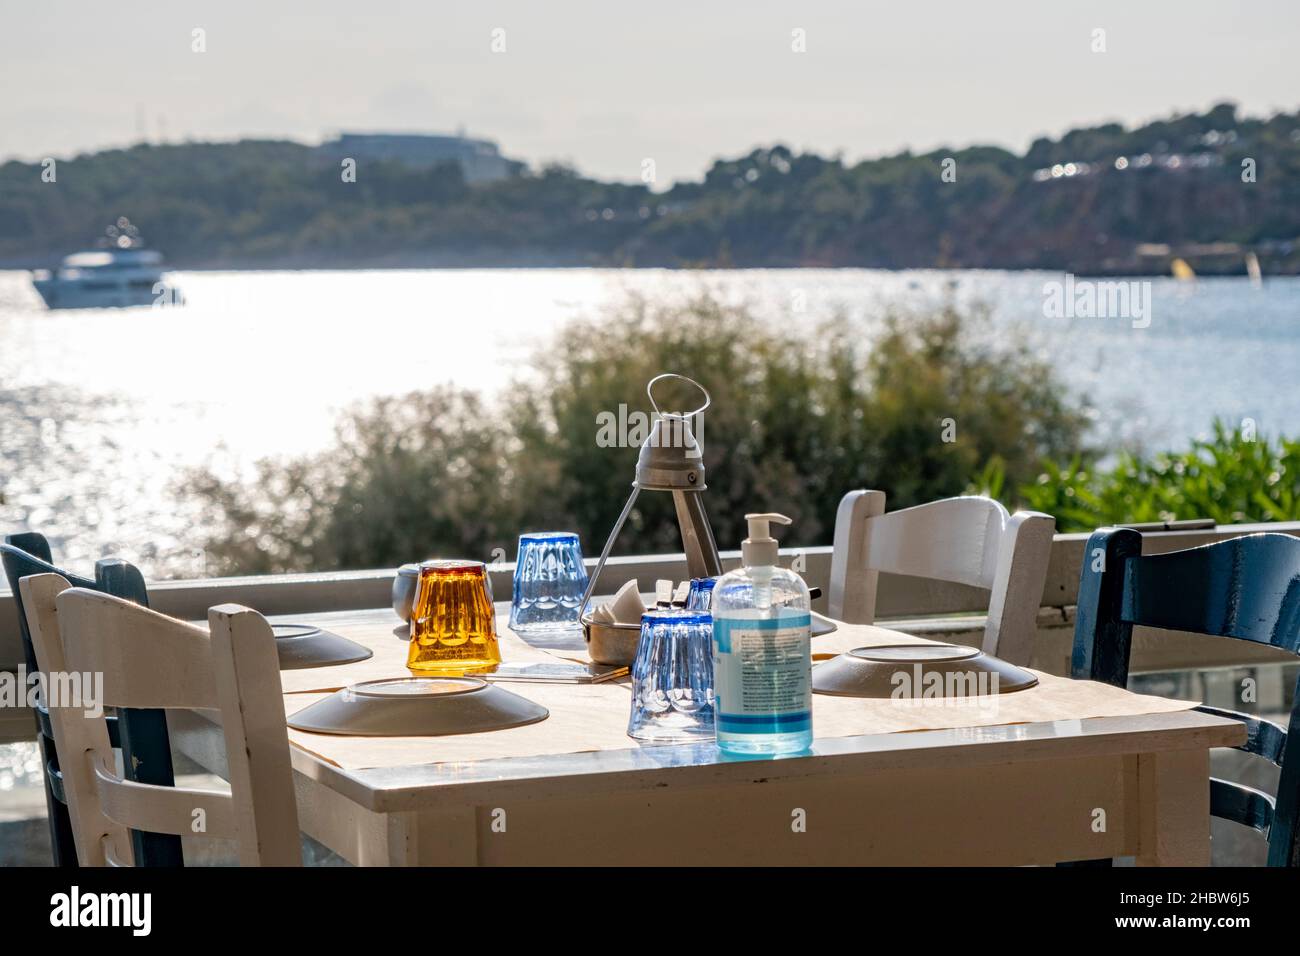 Athènes, Grèce - 29 septembre 2021 : table préparée avec de la vaisselle et une bouteille d'assainisseur pour les mains.Restaurant avec vue incroyable attendant les clients. Banque D'Images